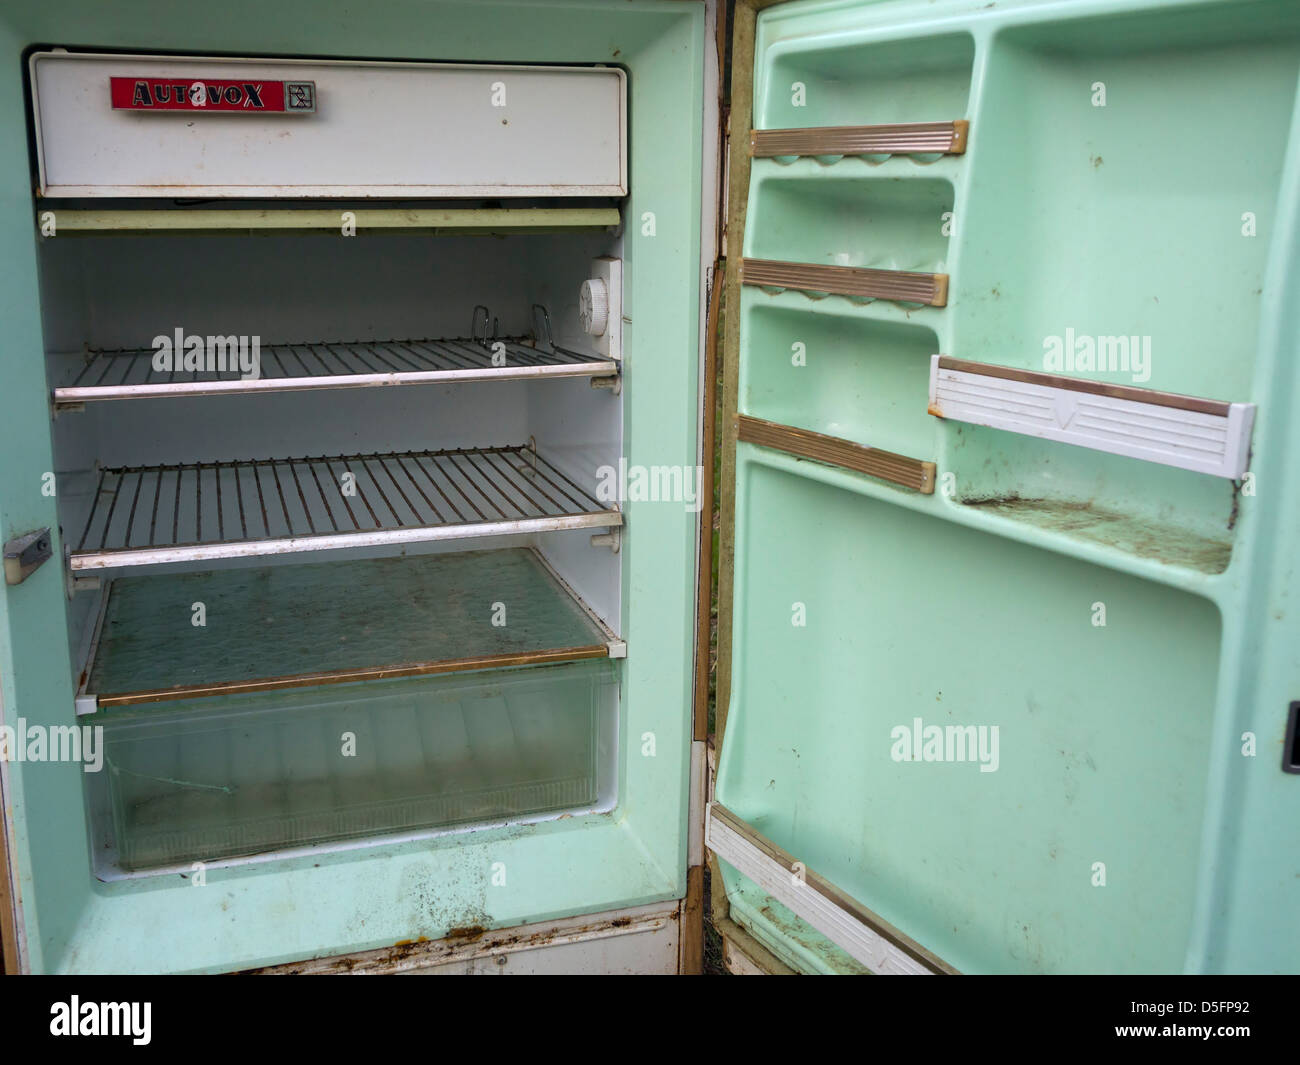 Old fridge empty with open door Stock Photo